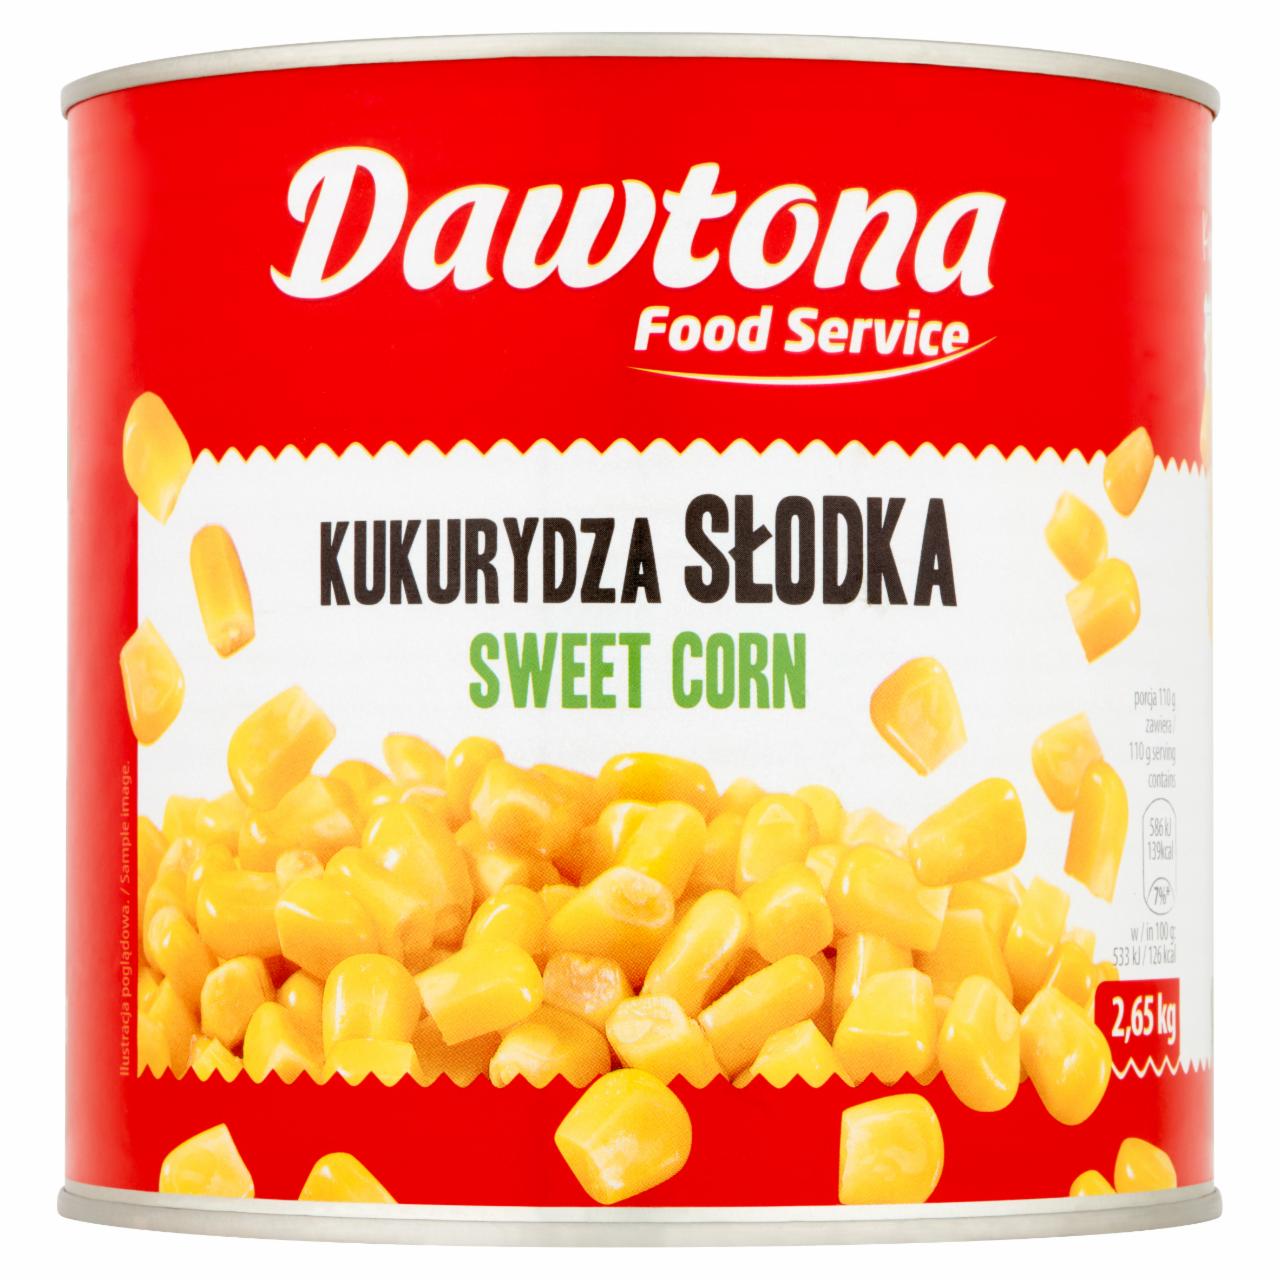 Zdjęcia - Dawtona Food Service Kukurydza słodka 2,65 kg